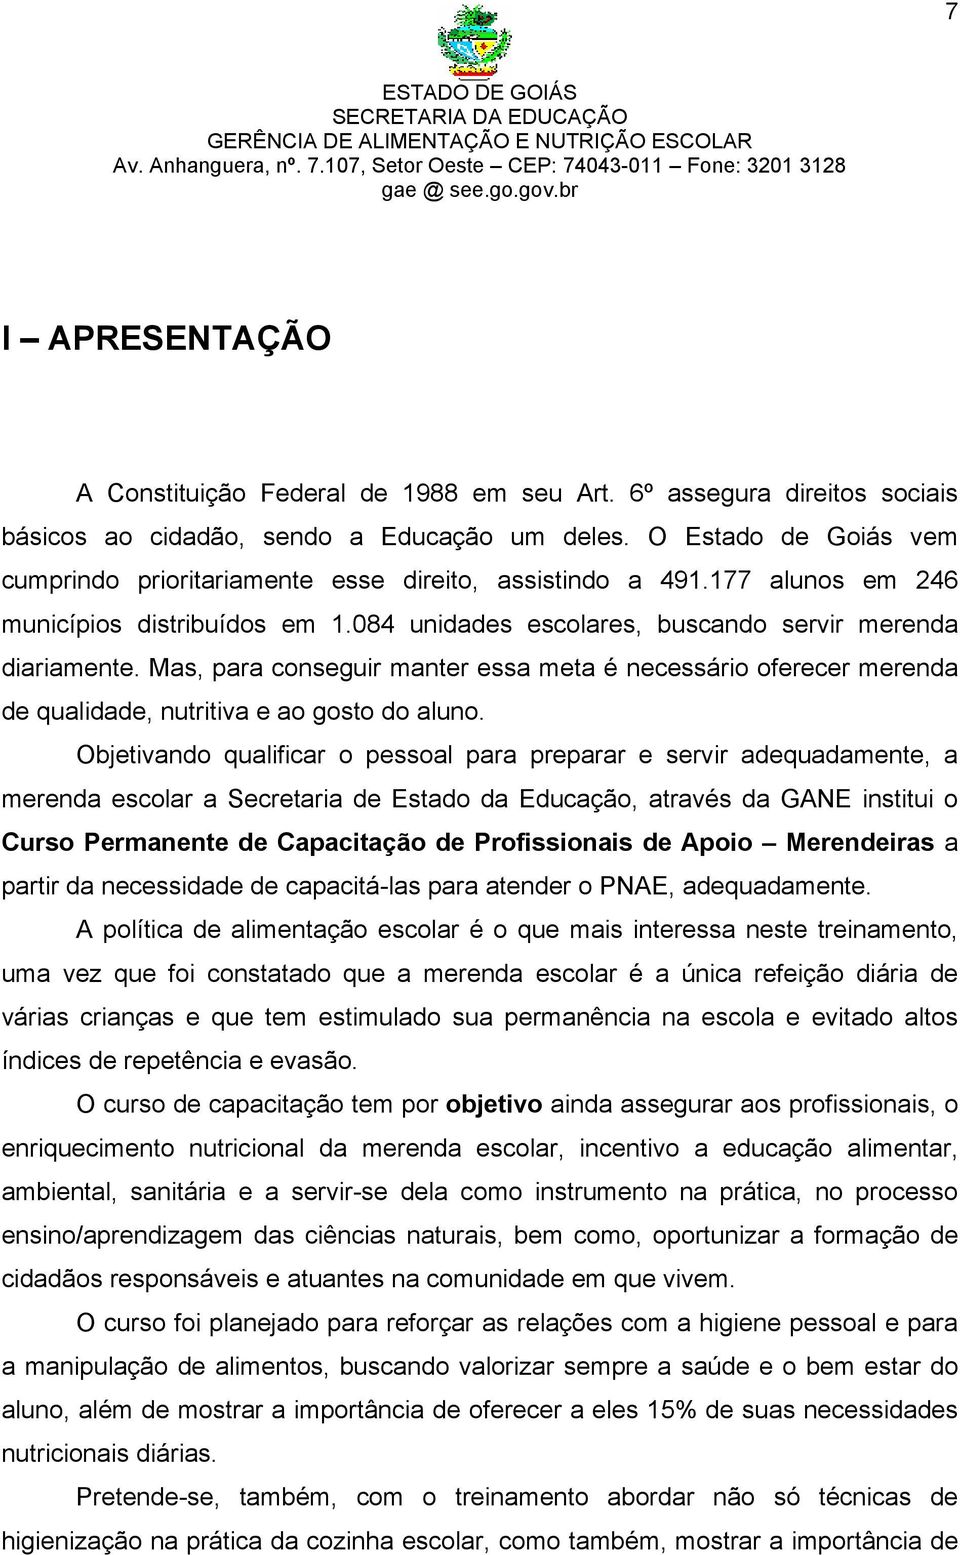 O Estado de Goiás vem cumprindo prioritariamente esse direito, assistindo a 491.177 alunos em 246 municípios distribuídos em 1.084 unidades escolares, buscando servir merenda diariamente.